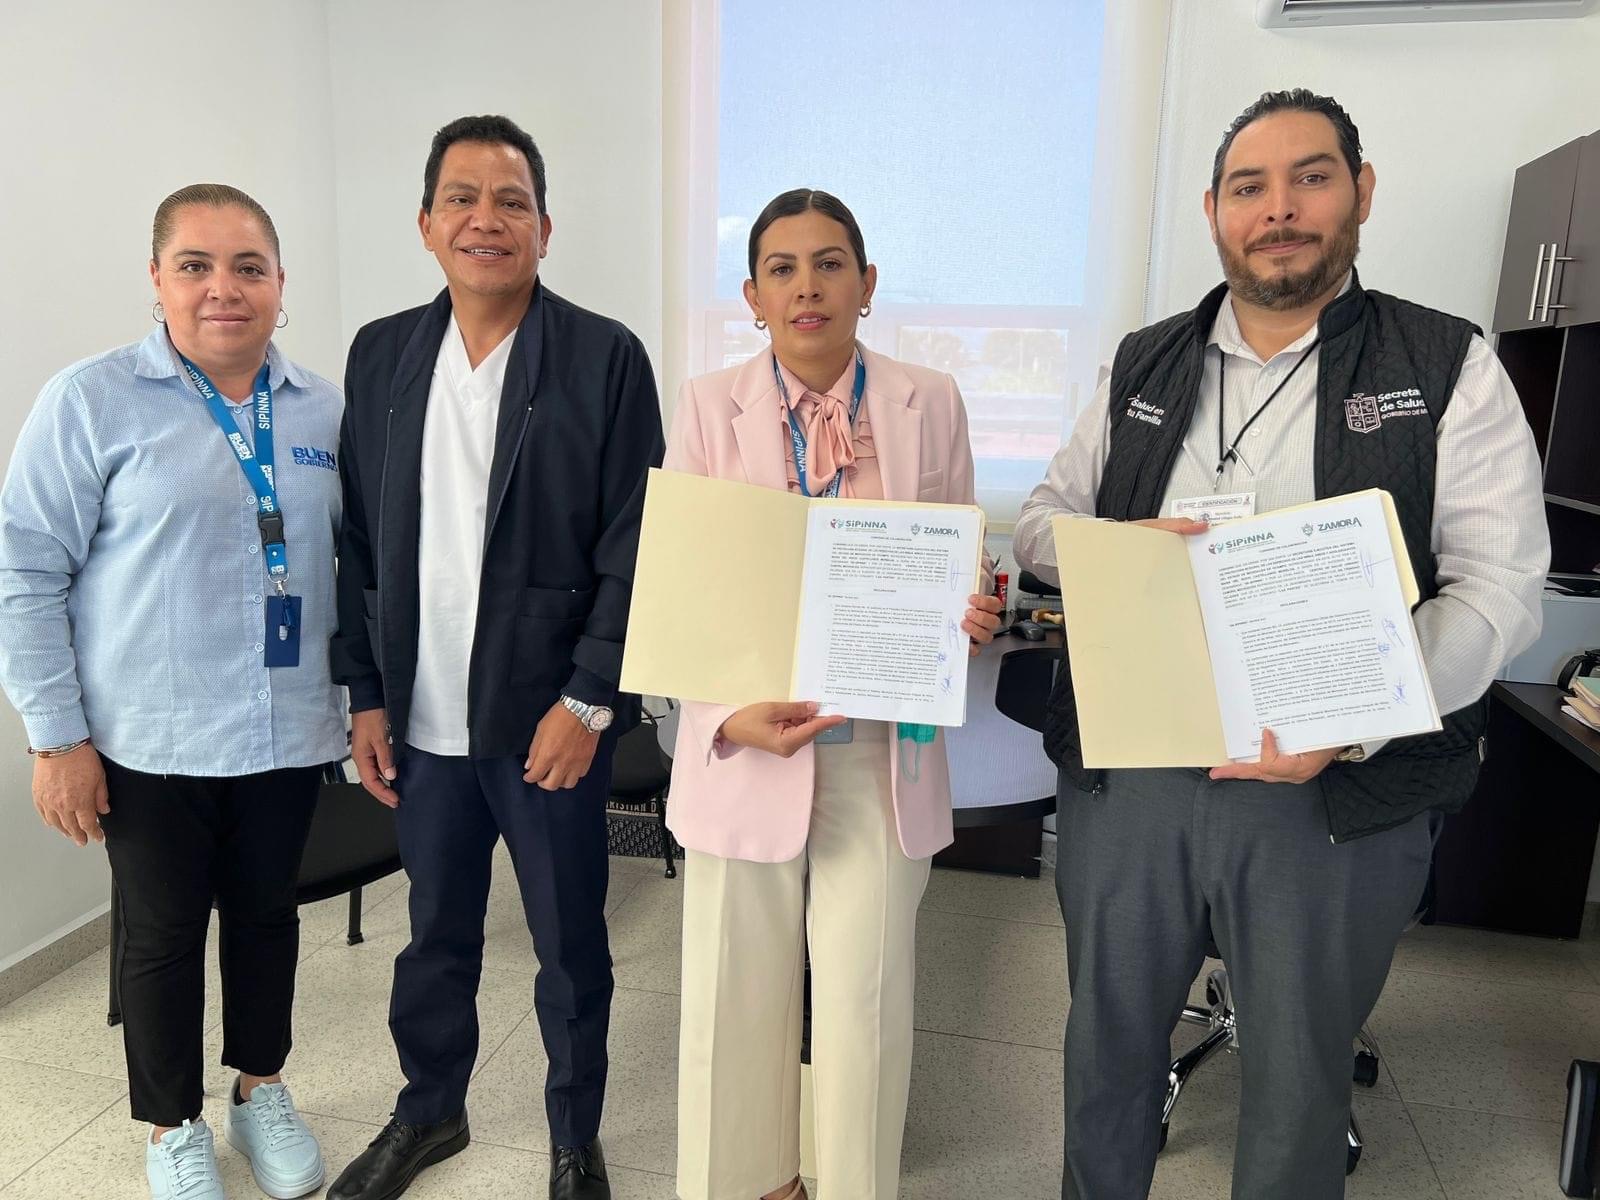 SIPINNA y Centro de Salud “Galeana” acuerdan llevar temas y acciones a escuelas del municipio